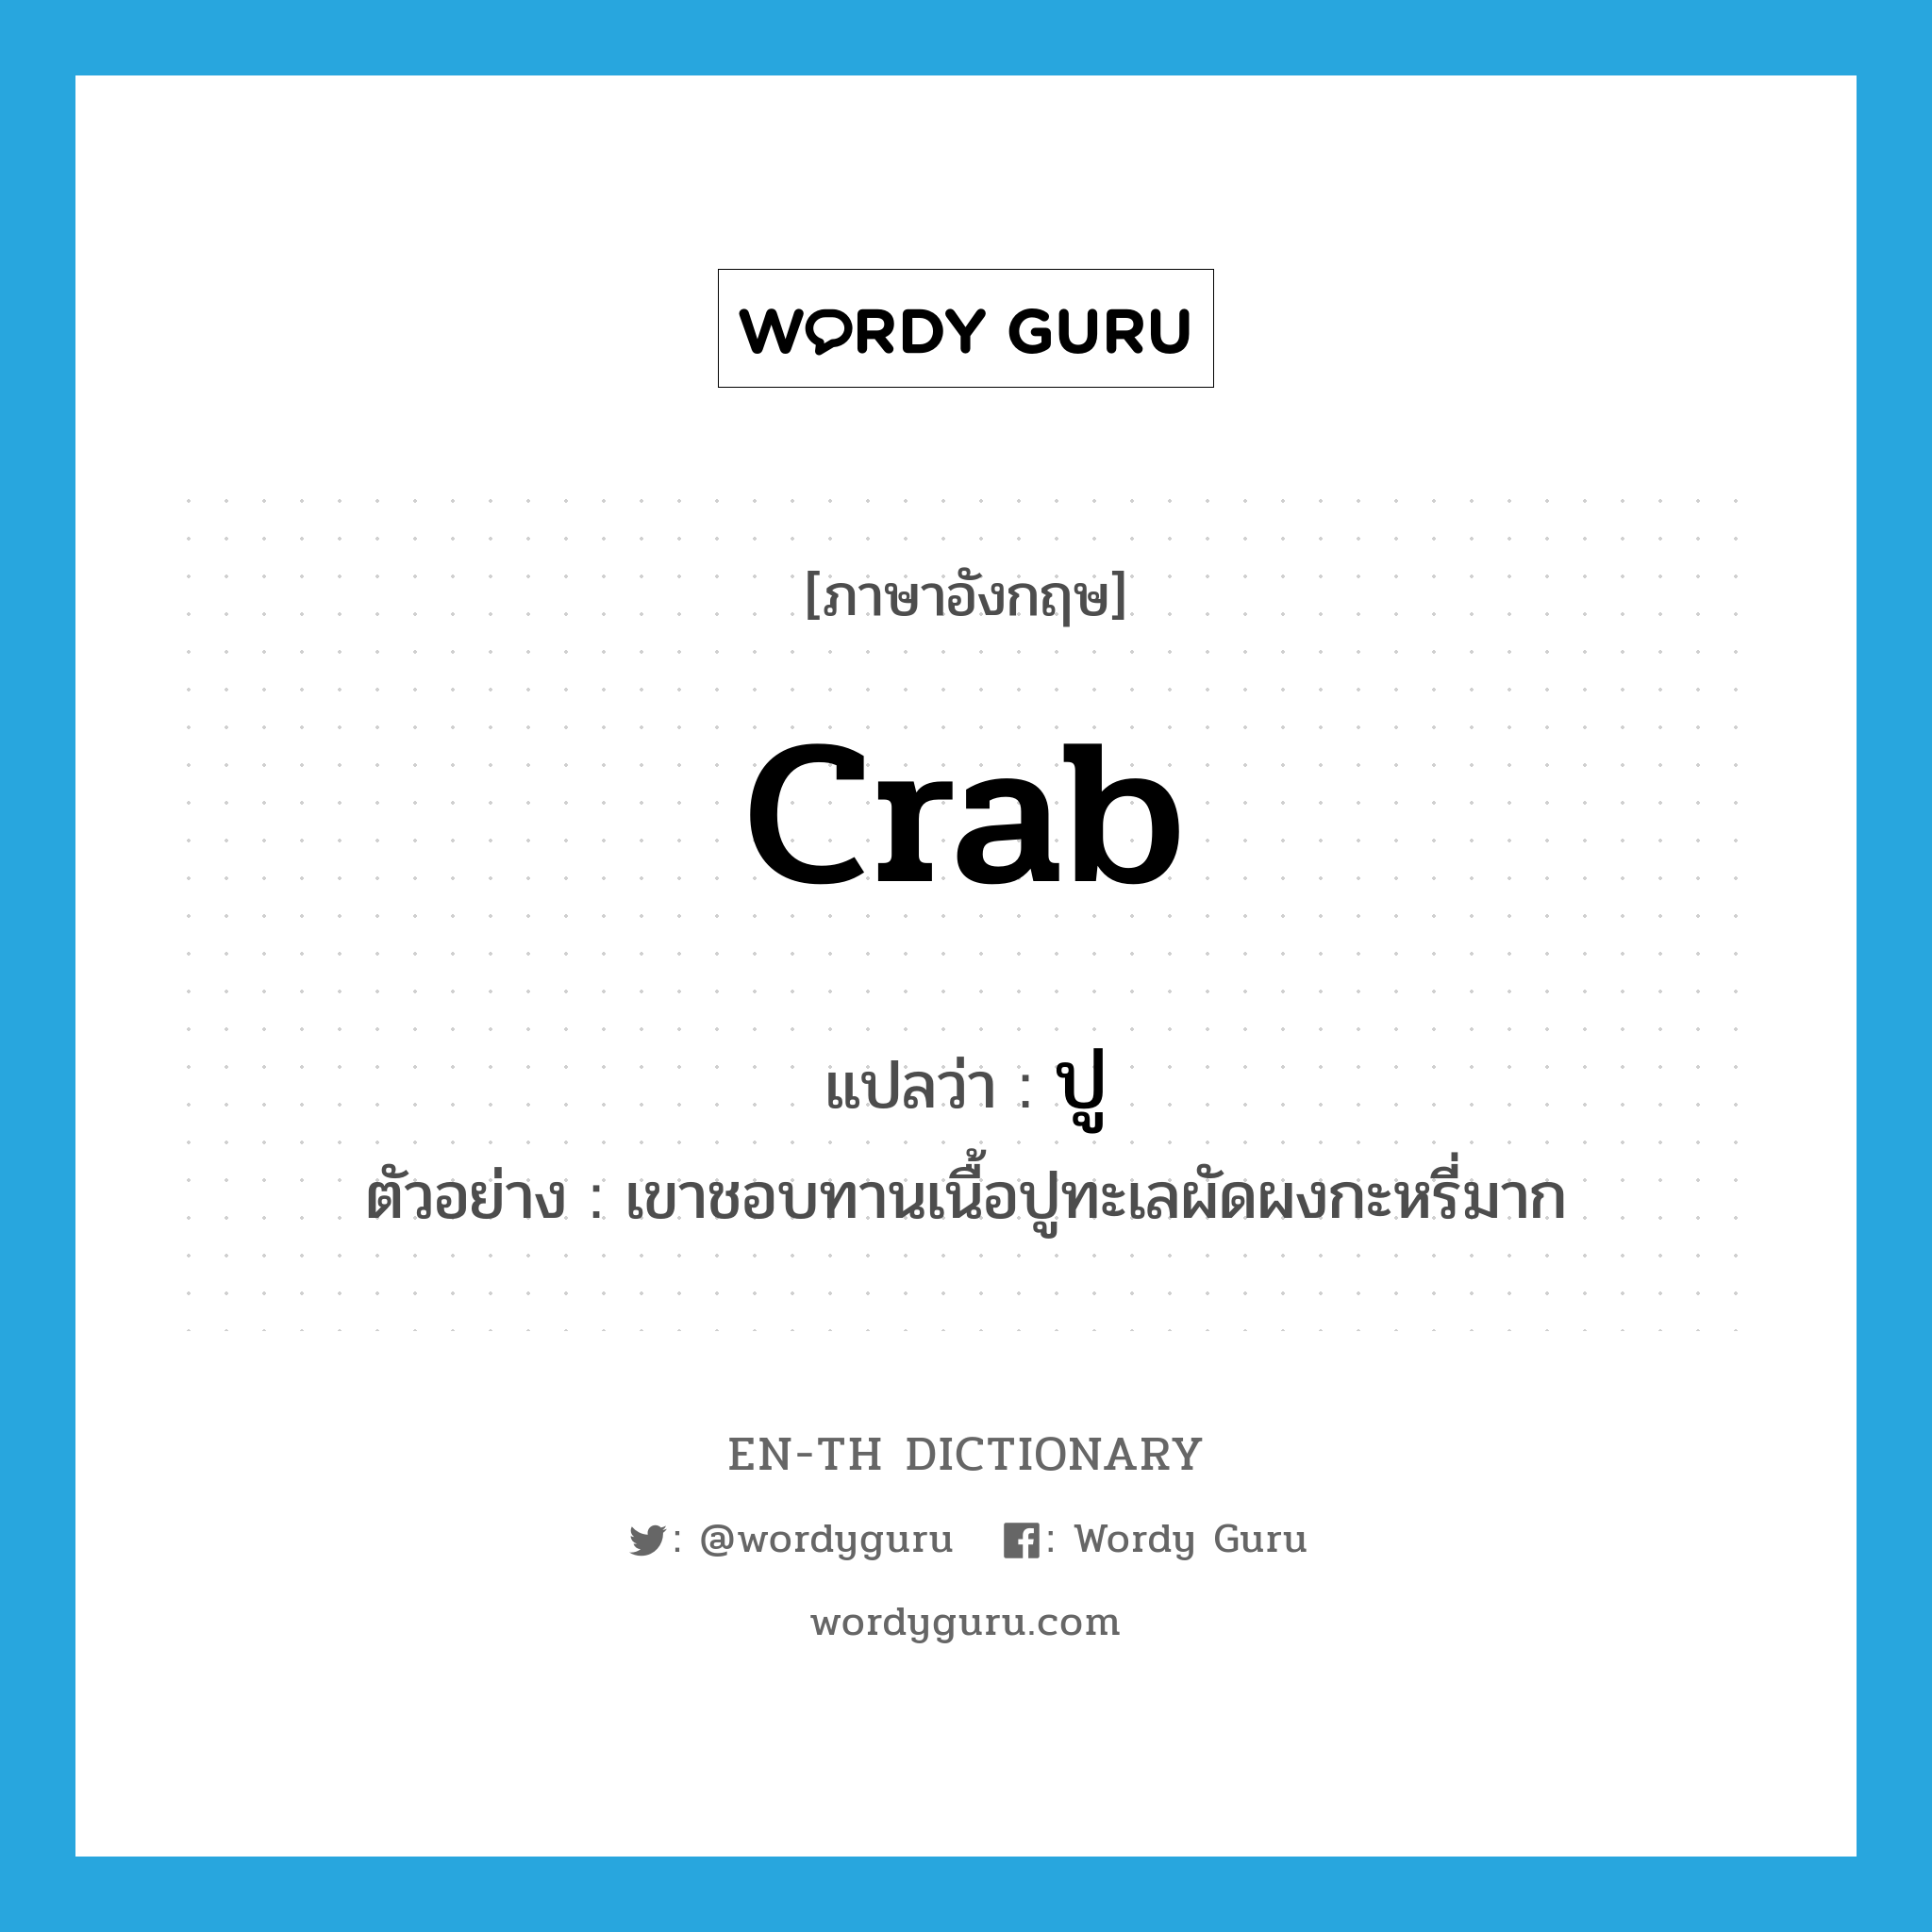 crab แปลว่า?, คำศัพท์ภาษาอังกฤษ crab แปลว่า ปู ประเภท N ตัวอย่าง เขาชอบทานเนื้อปูทะเลผัดผงกะหรี่มาก หมวด N